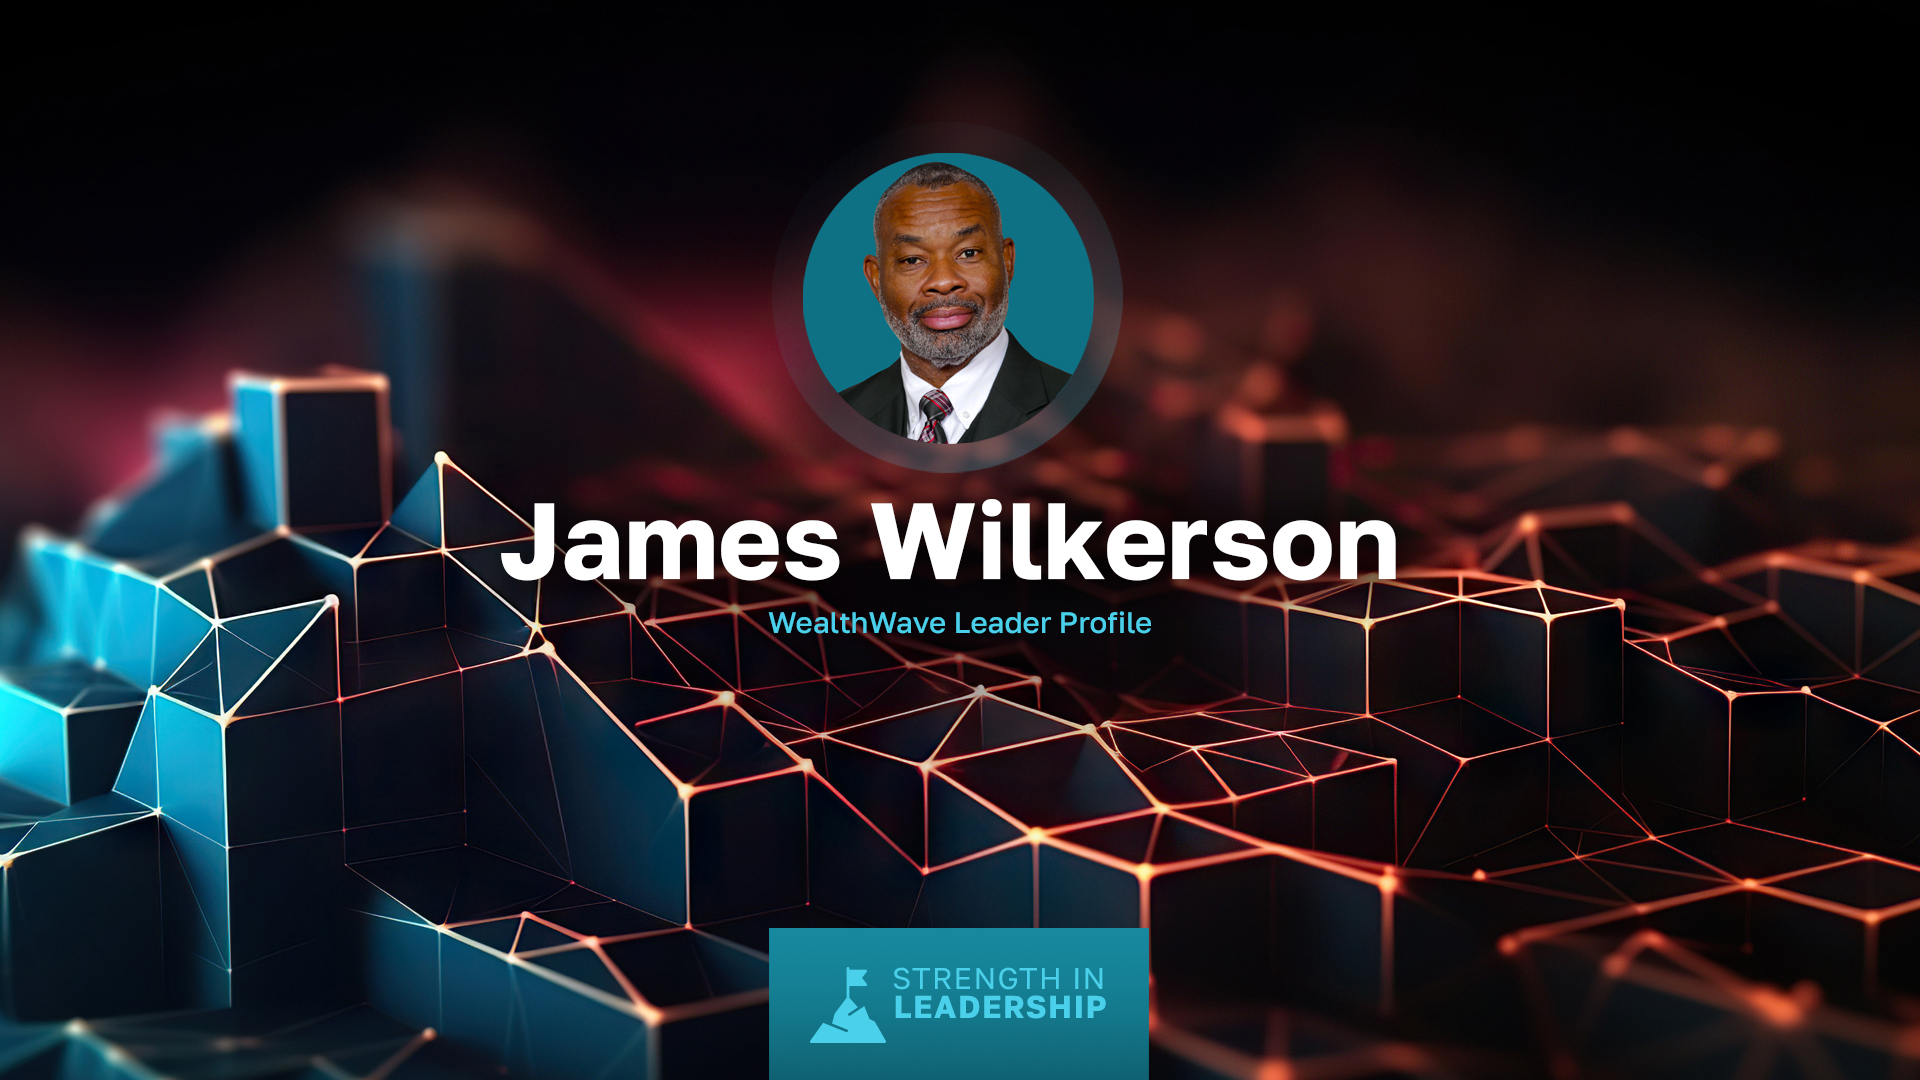 Profil einer Führungskraft: James Wilkerson - Vom Marineoffizier zur Führungskraft in der Finanzbranche